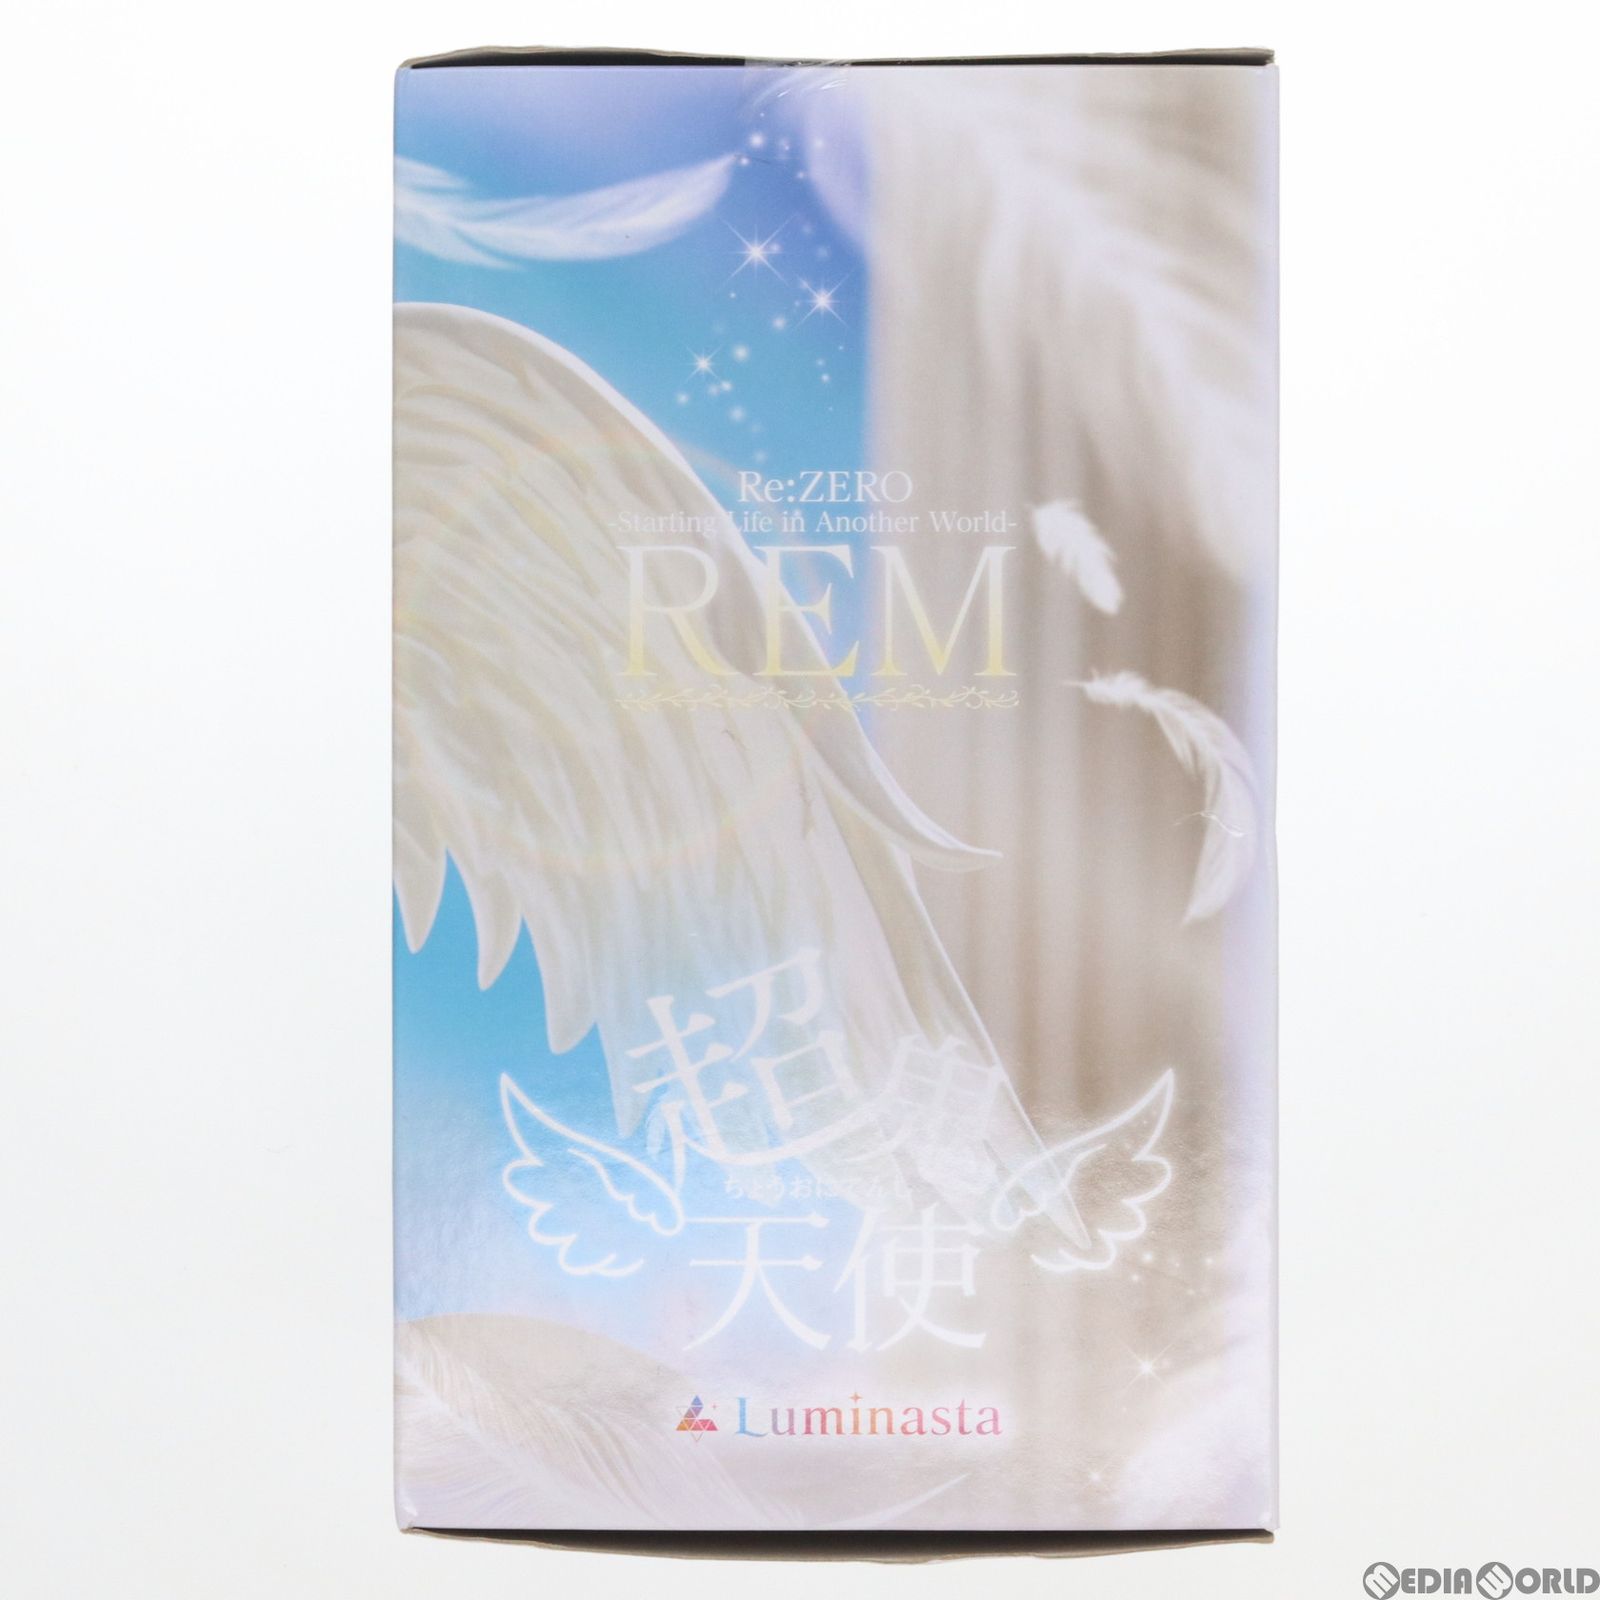 レム-超鬼天使- Re:ゼロから始める異世界生活 Luminasta フィギュア プライズ(1065858) セガ - メルカリ